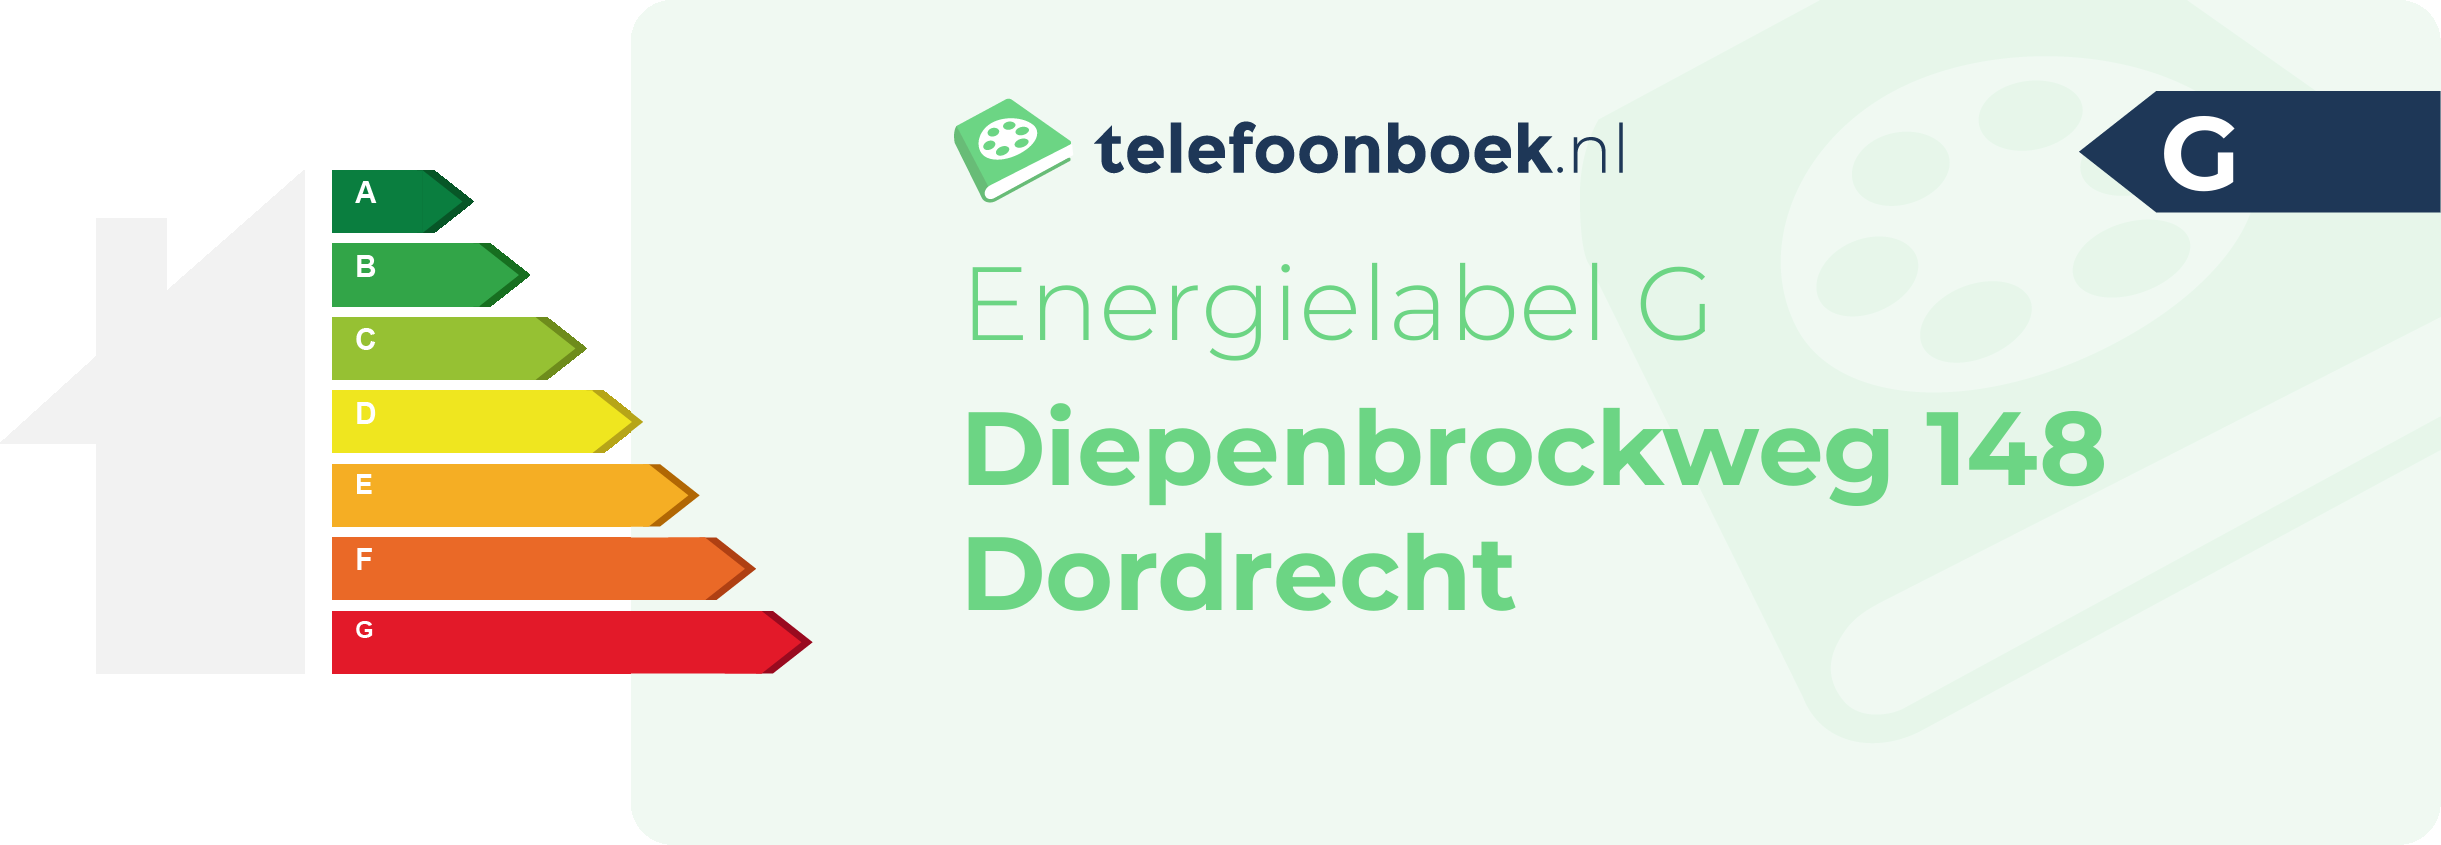 Energielabel Diepenbrockweg 148 Dordrecht